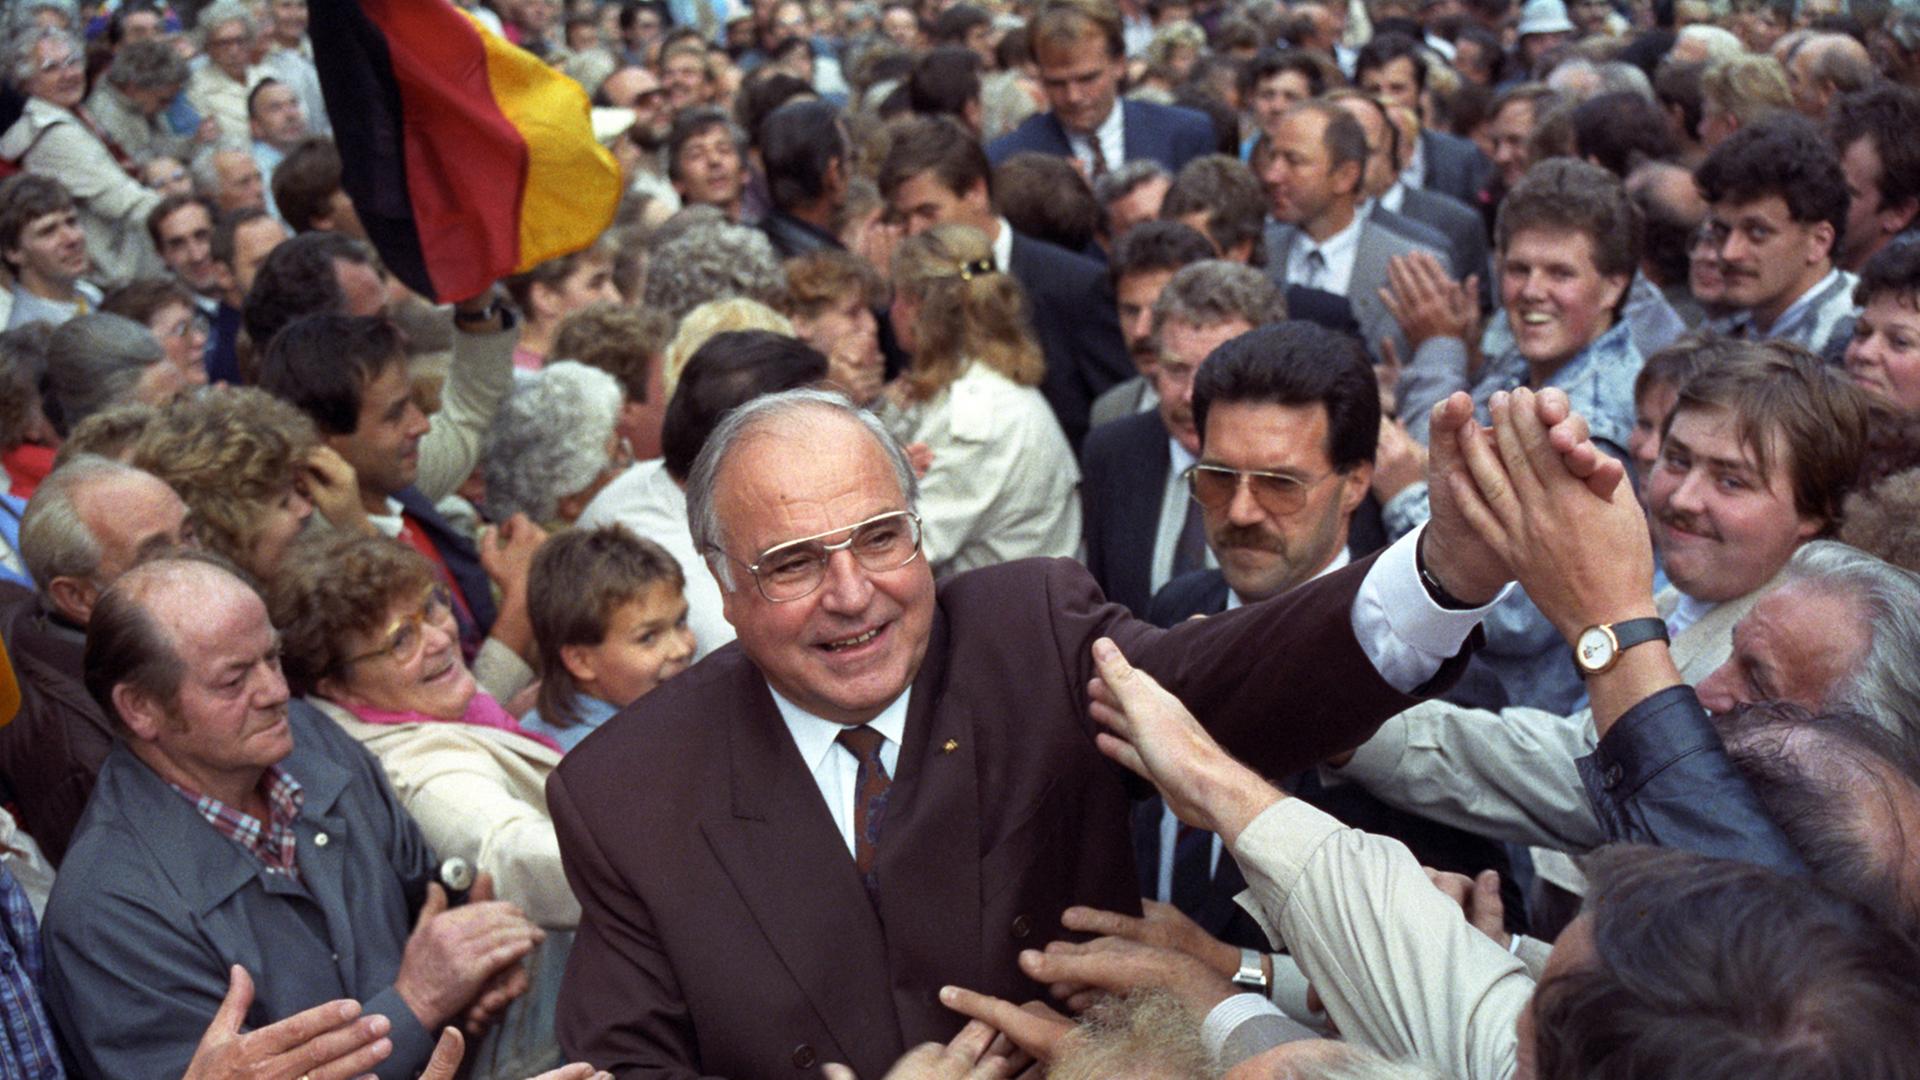 Bundeskanzler Helmut Kohl wird bei der Eröffnung des Landtagswahlkampfs in Thüringen am 05.09.1990 in Heiligenstadt von Anhängern umringt.